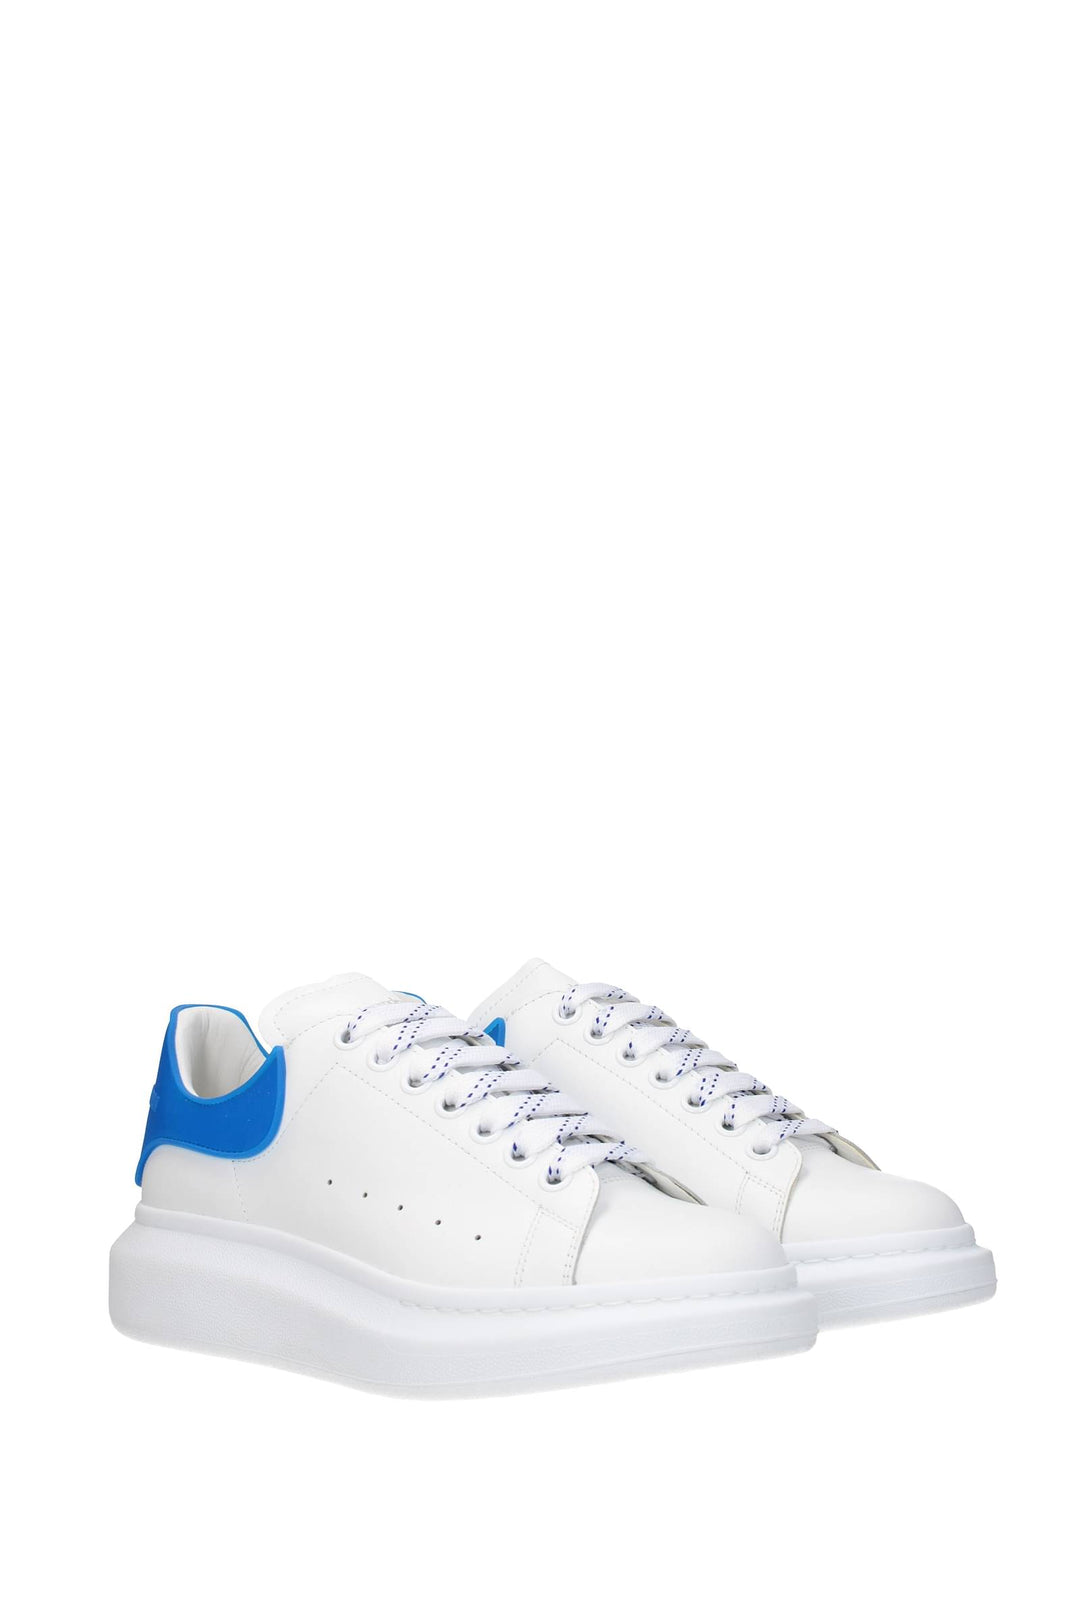 Sneakers Oversize Pelle Bianco Blu - Alexander McQueen - Uomo